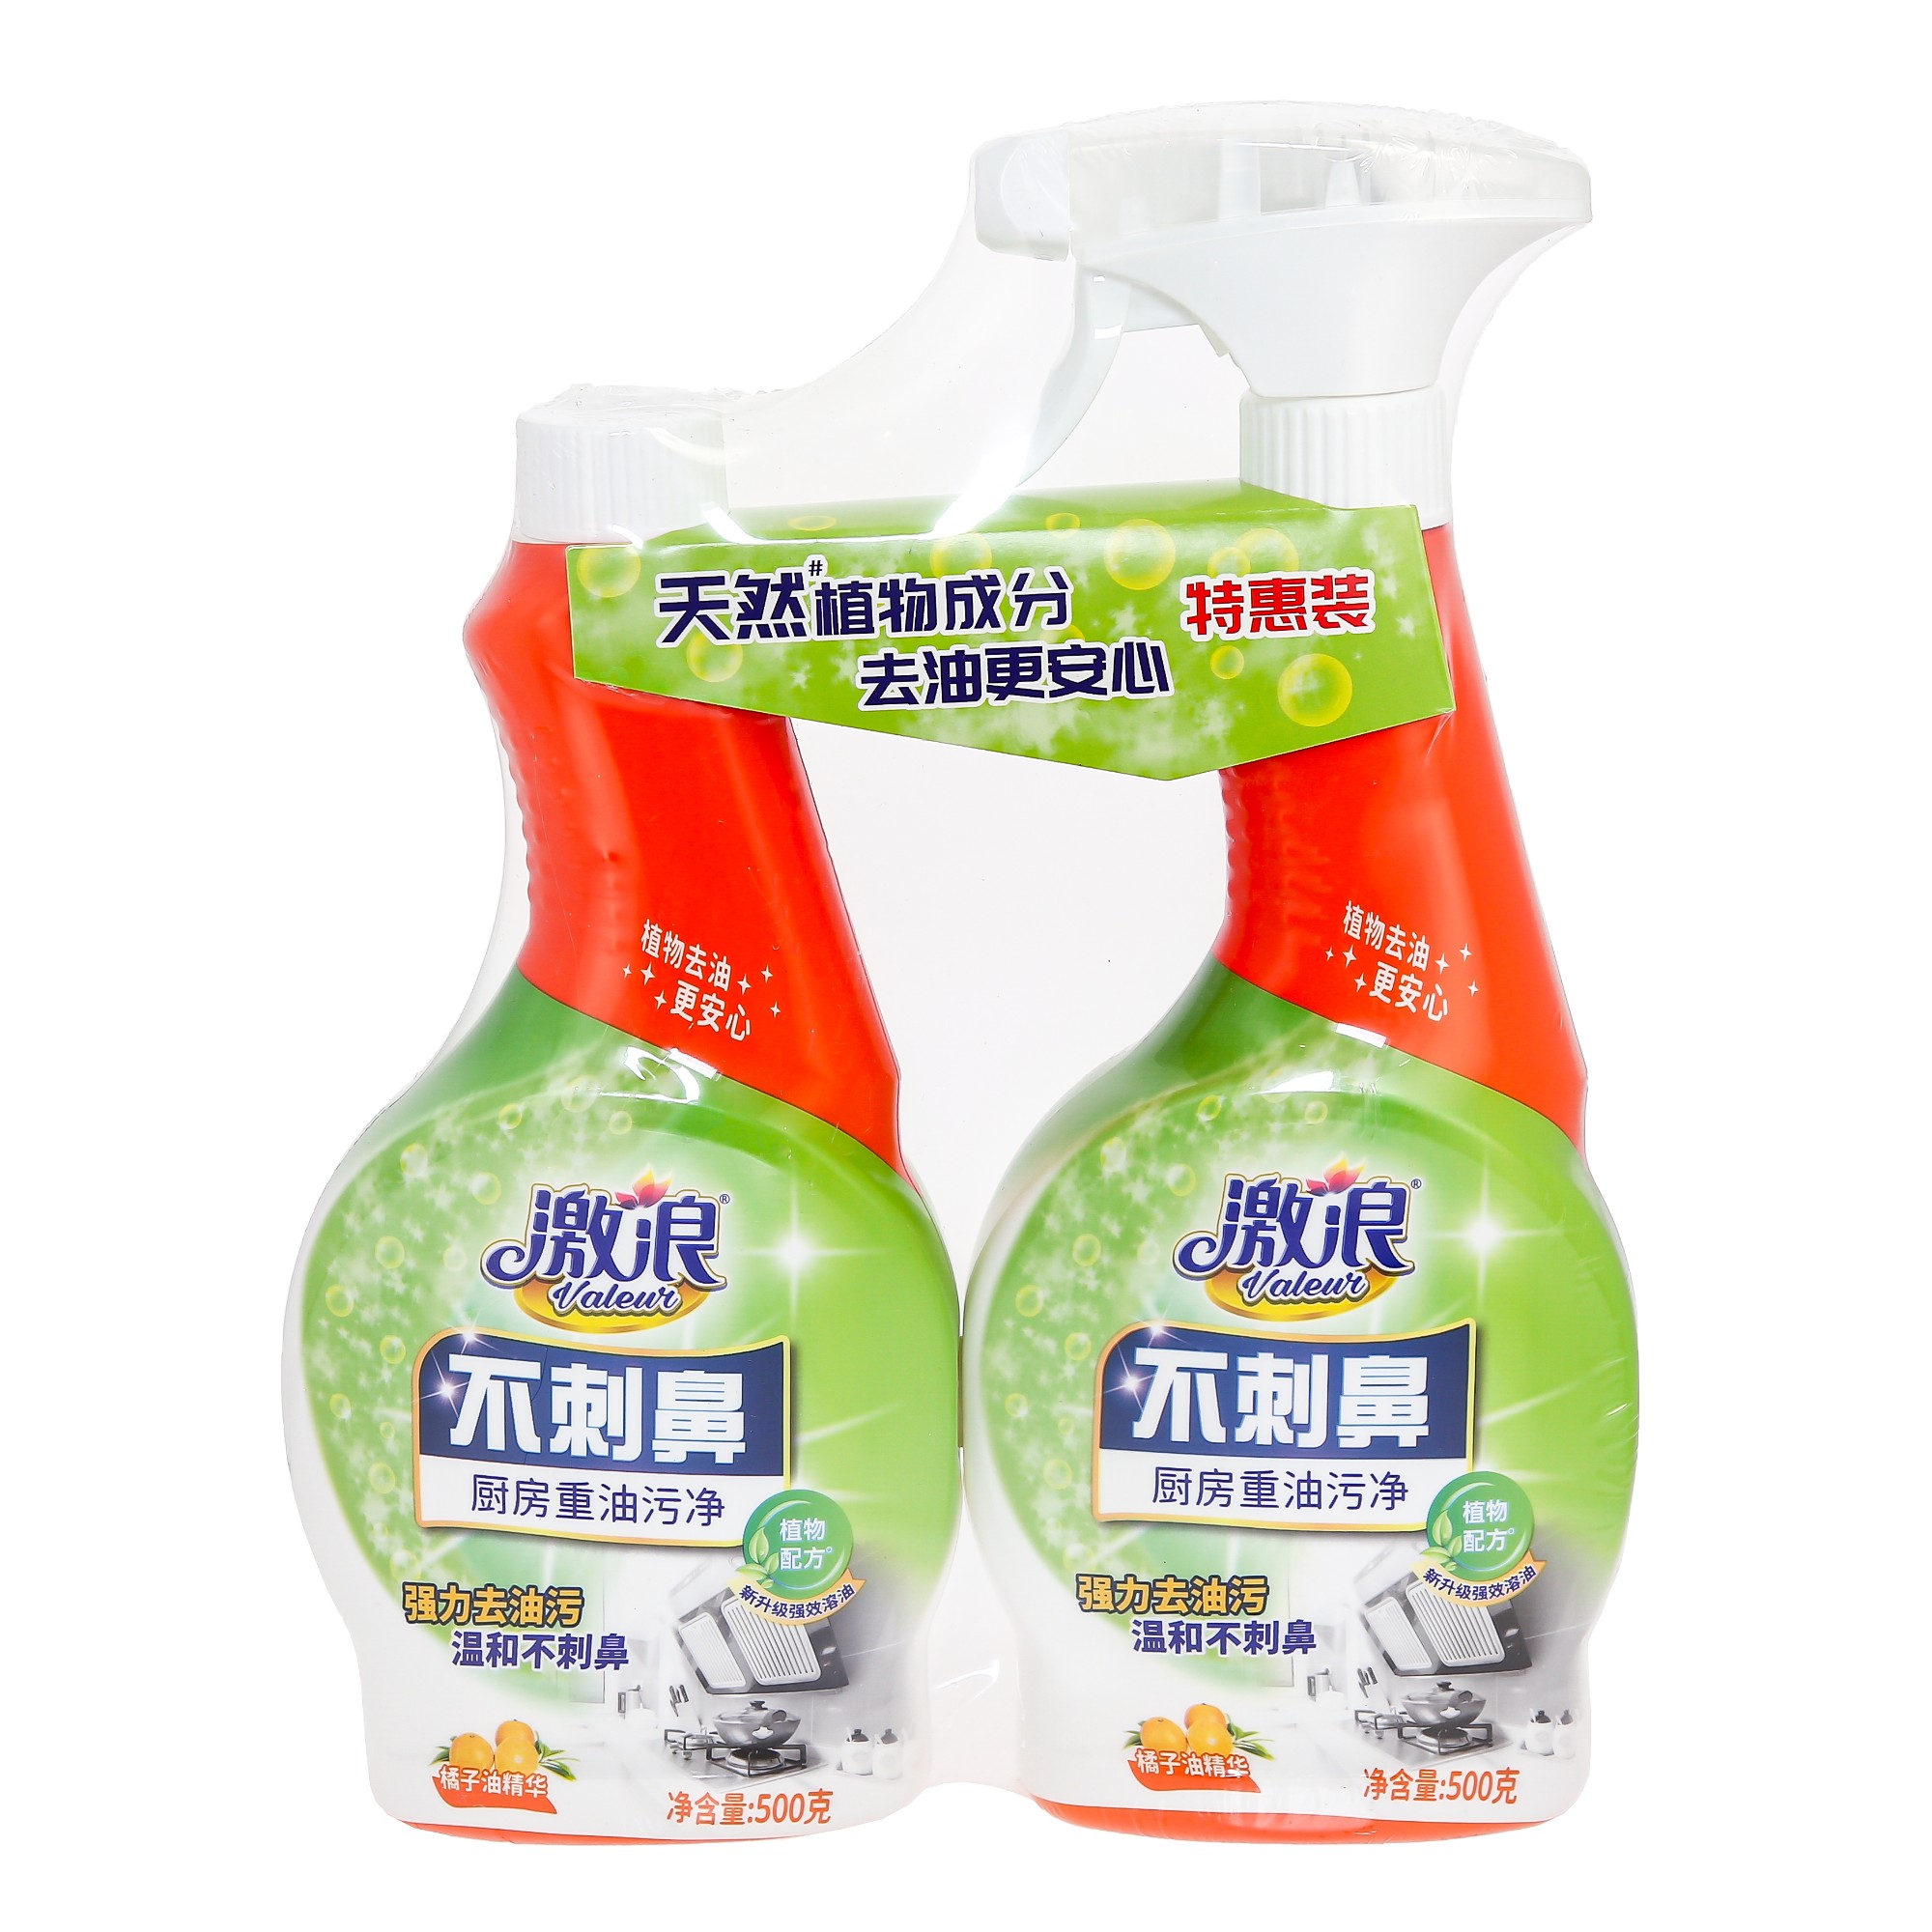 Чистящее средство для кухни Valeur с антибактериальным эффектом апельсин 1+1 500 гр grass crispi чистящее экосредство для кухни 600 0